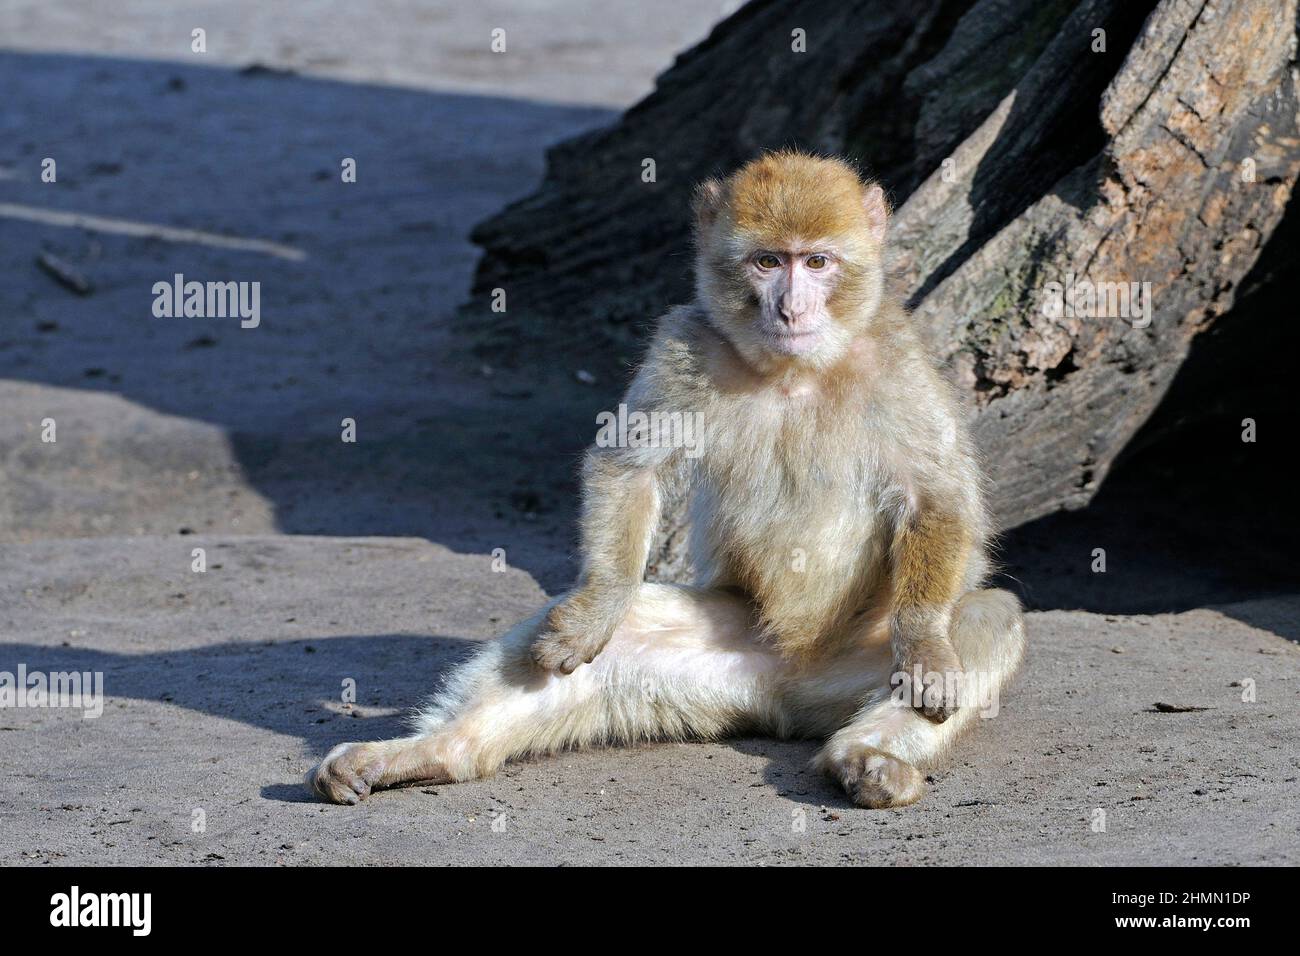 barbary ape, macaco di barbary (Macaca sylvanus), seduto a terra a legno di deat, Marocco Foto Stock